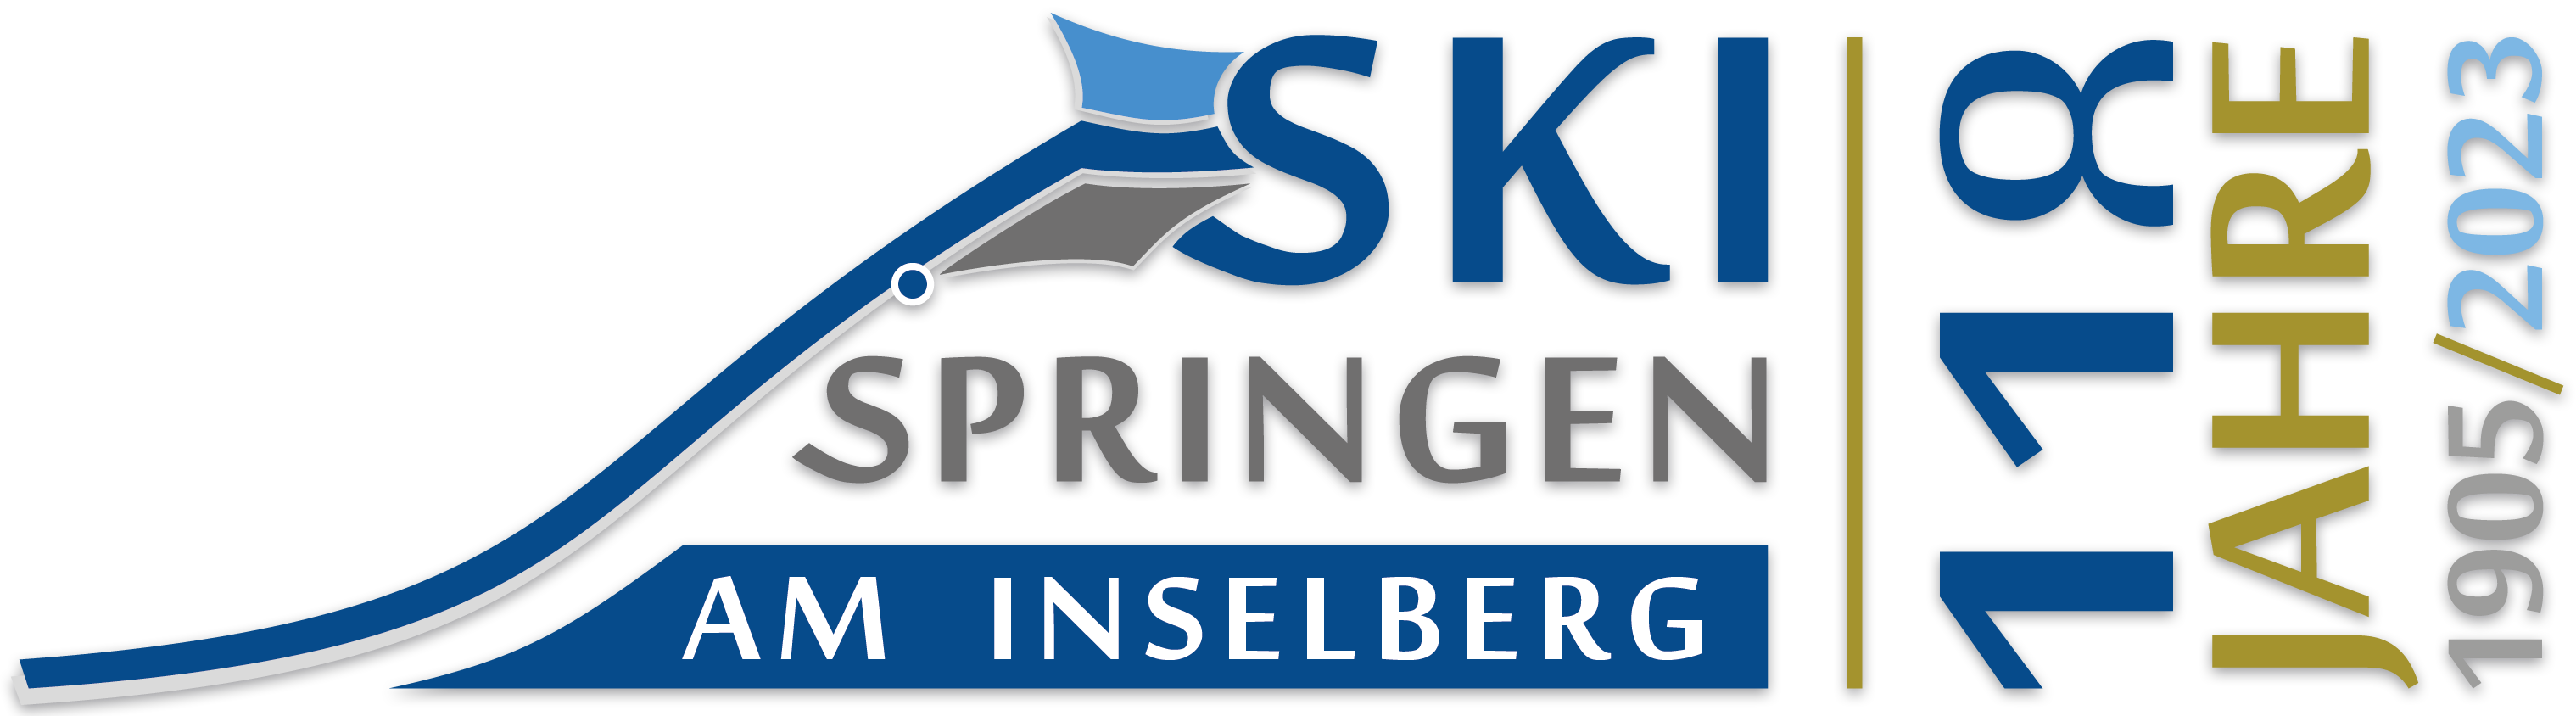 118 Jahre Skispringen am Inselberg